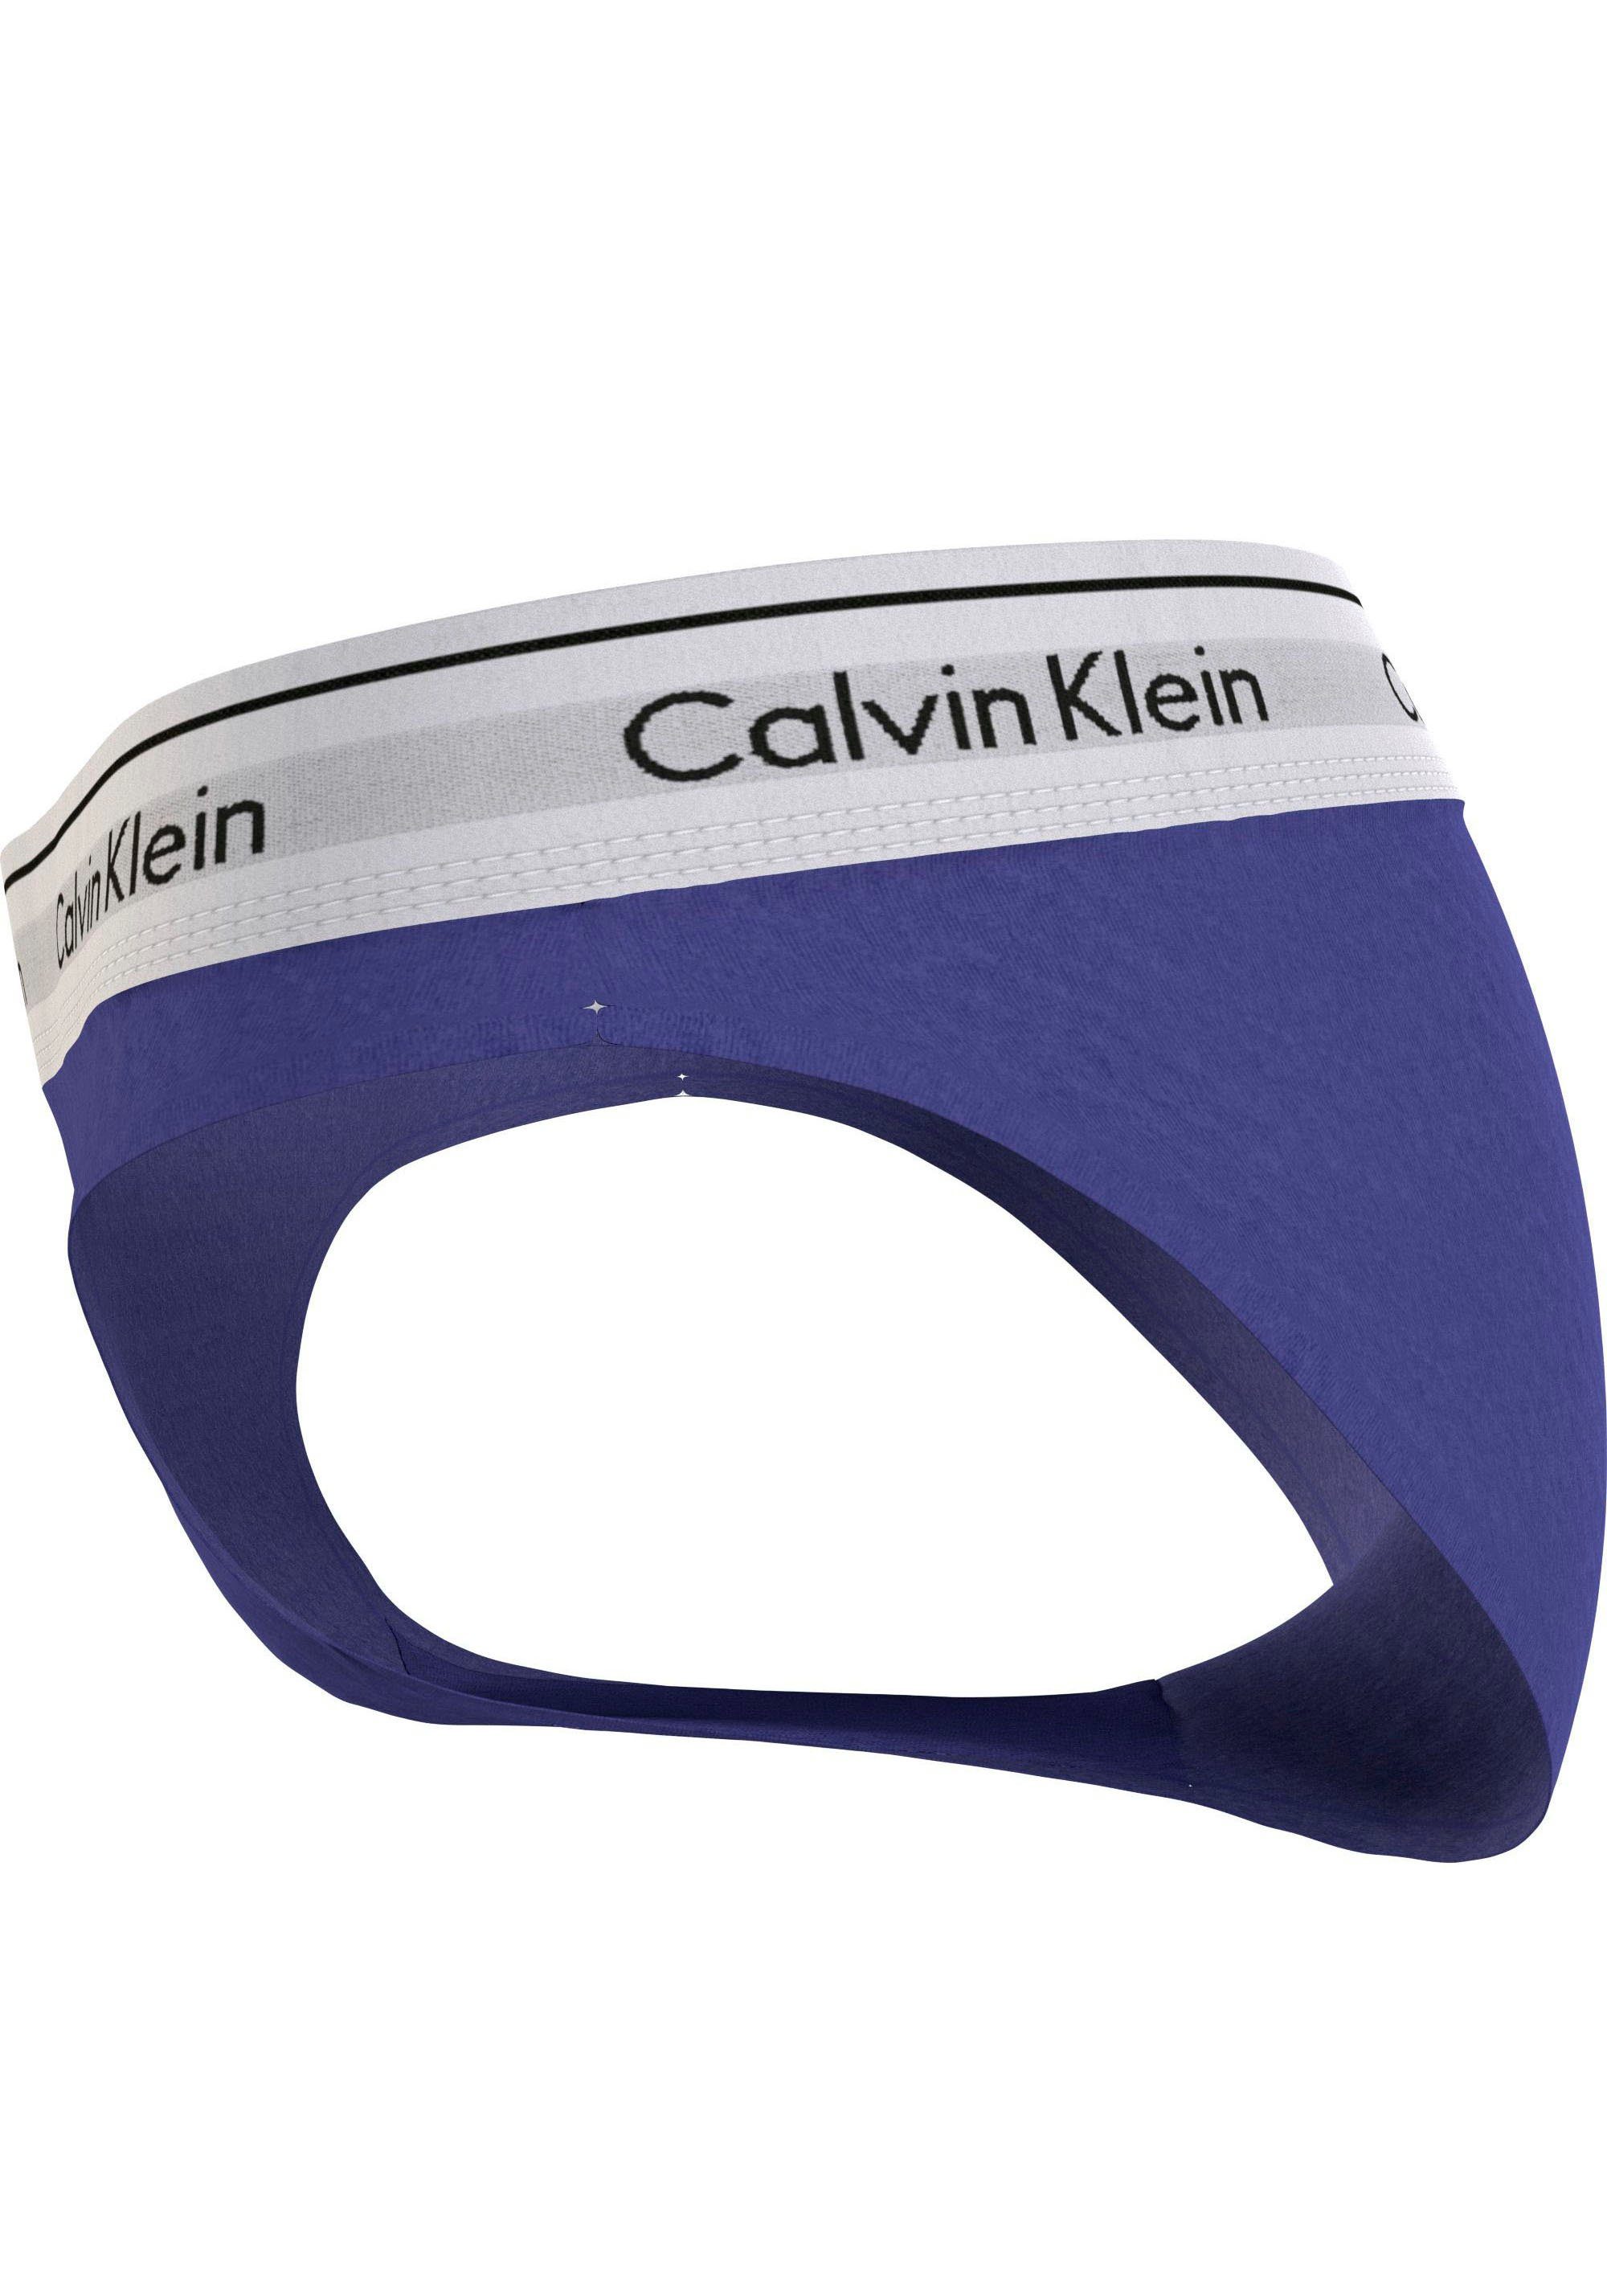 mit Bikinislip Calvin Underwear Klein klassischem Logo blau BIKINI